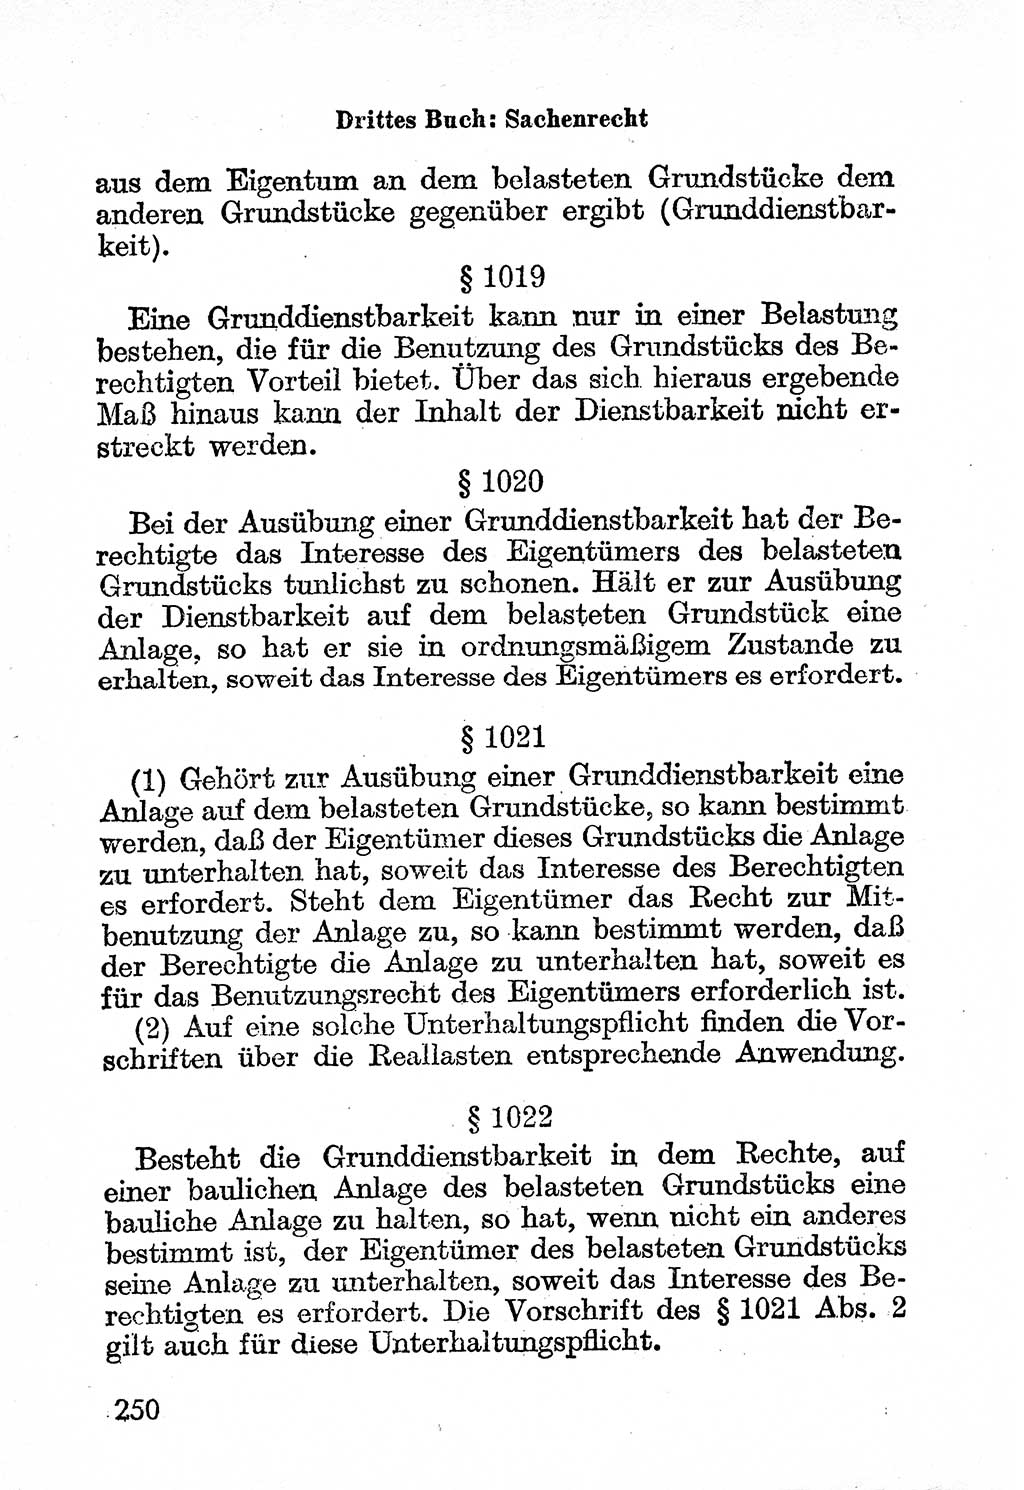 Bürgerliches Gesetzbuch (BGB) nebst wichtigen Nebengesetzen [Deutsche Demokratische Republik (DDR)] 1956, Seite 250 (BGB Nebenges. DDR 1956, S. 250)